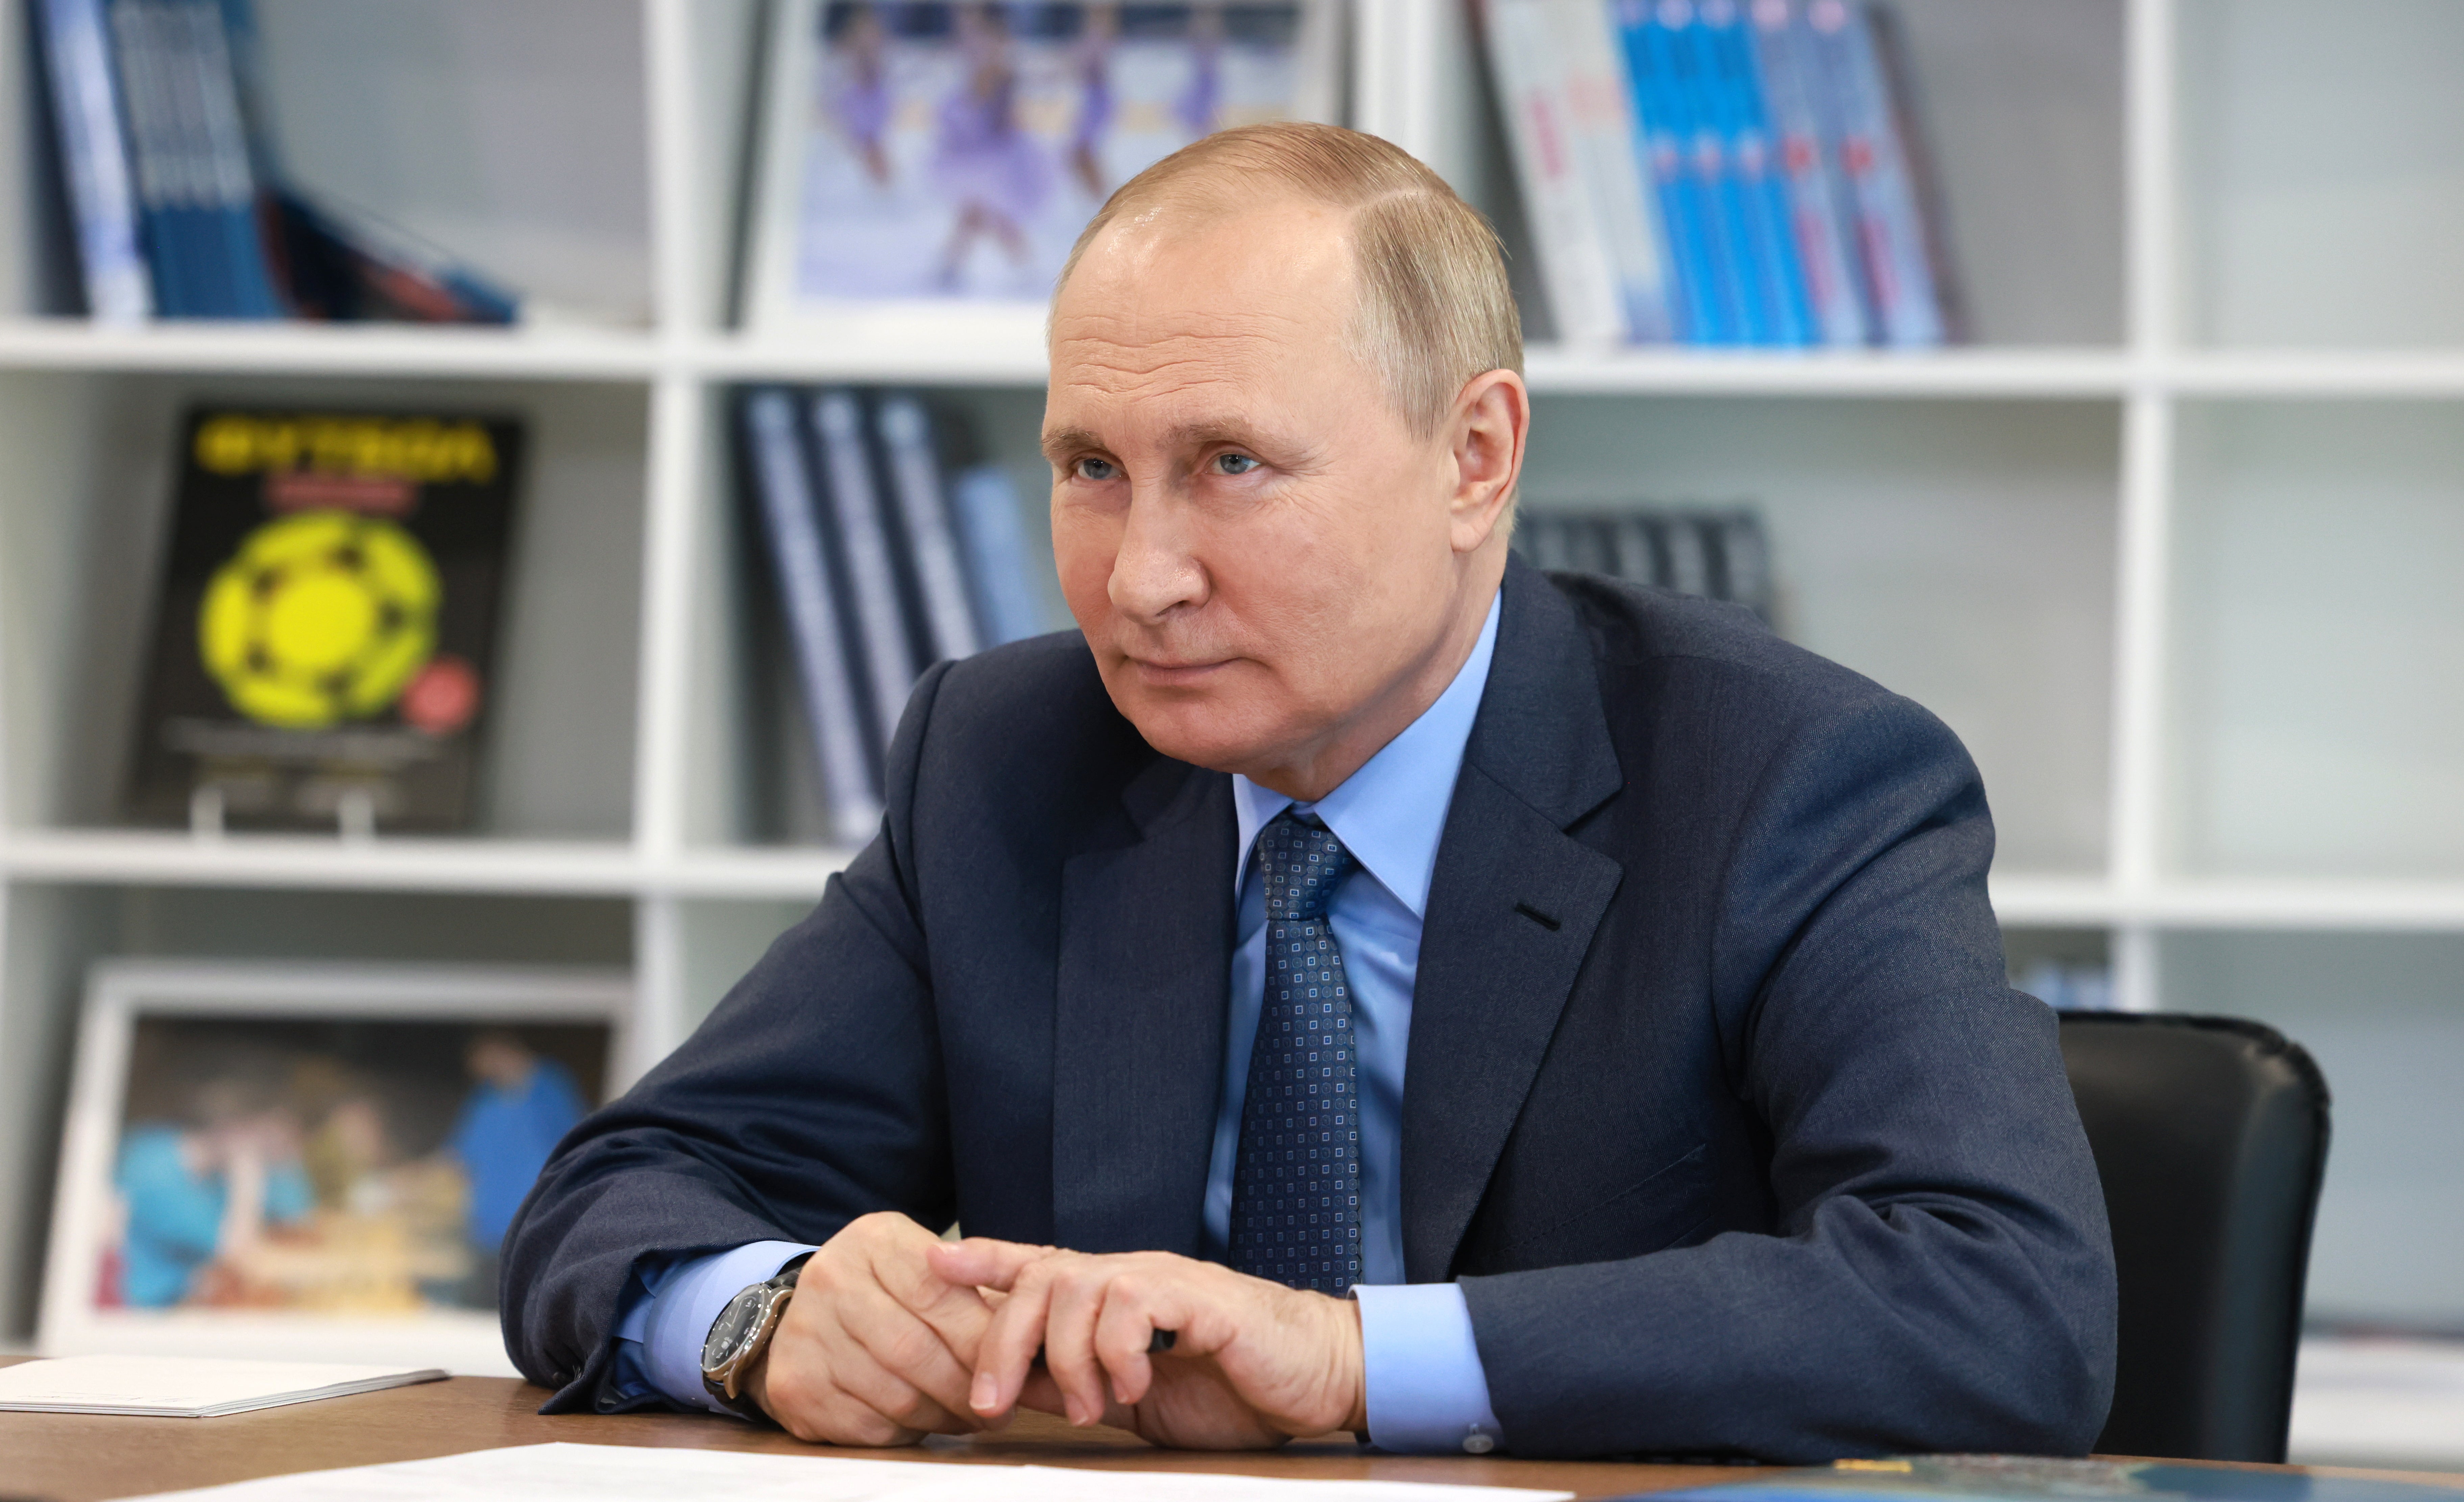 El presidente ruso Vladimir Putin no ha conseguido la victoria rápida que muchos creen que esperaba